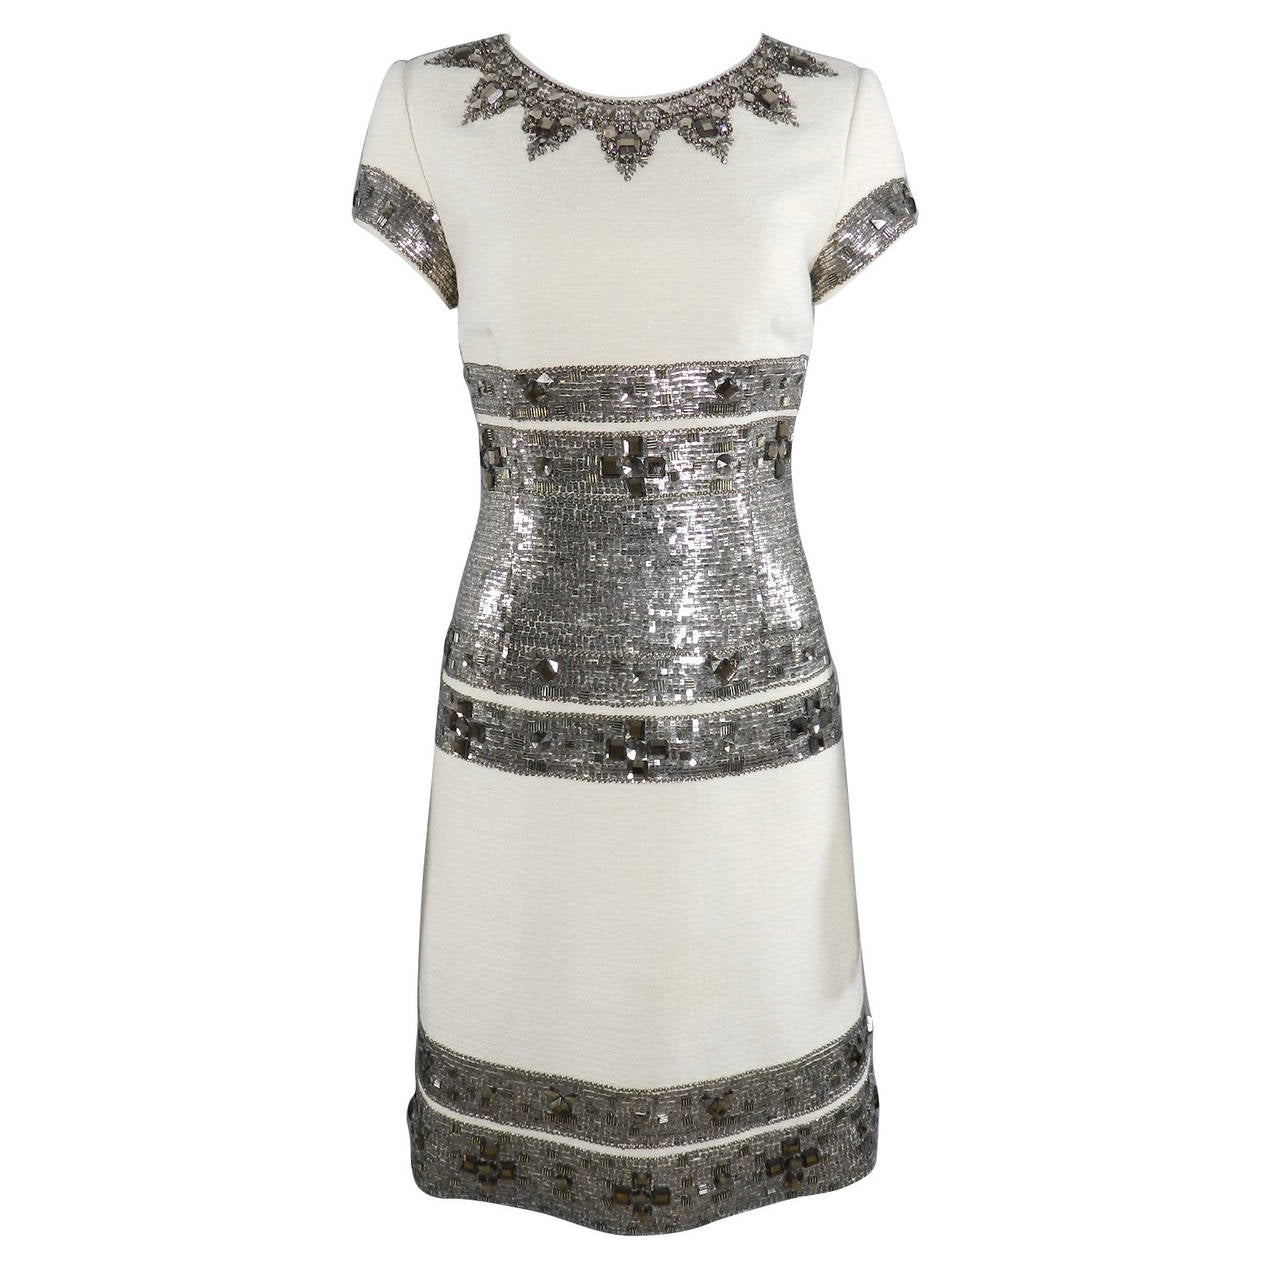 Oscar de la Renta Fall 07 Ivory Wool Sequin Embellished Dress